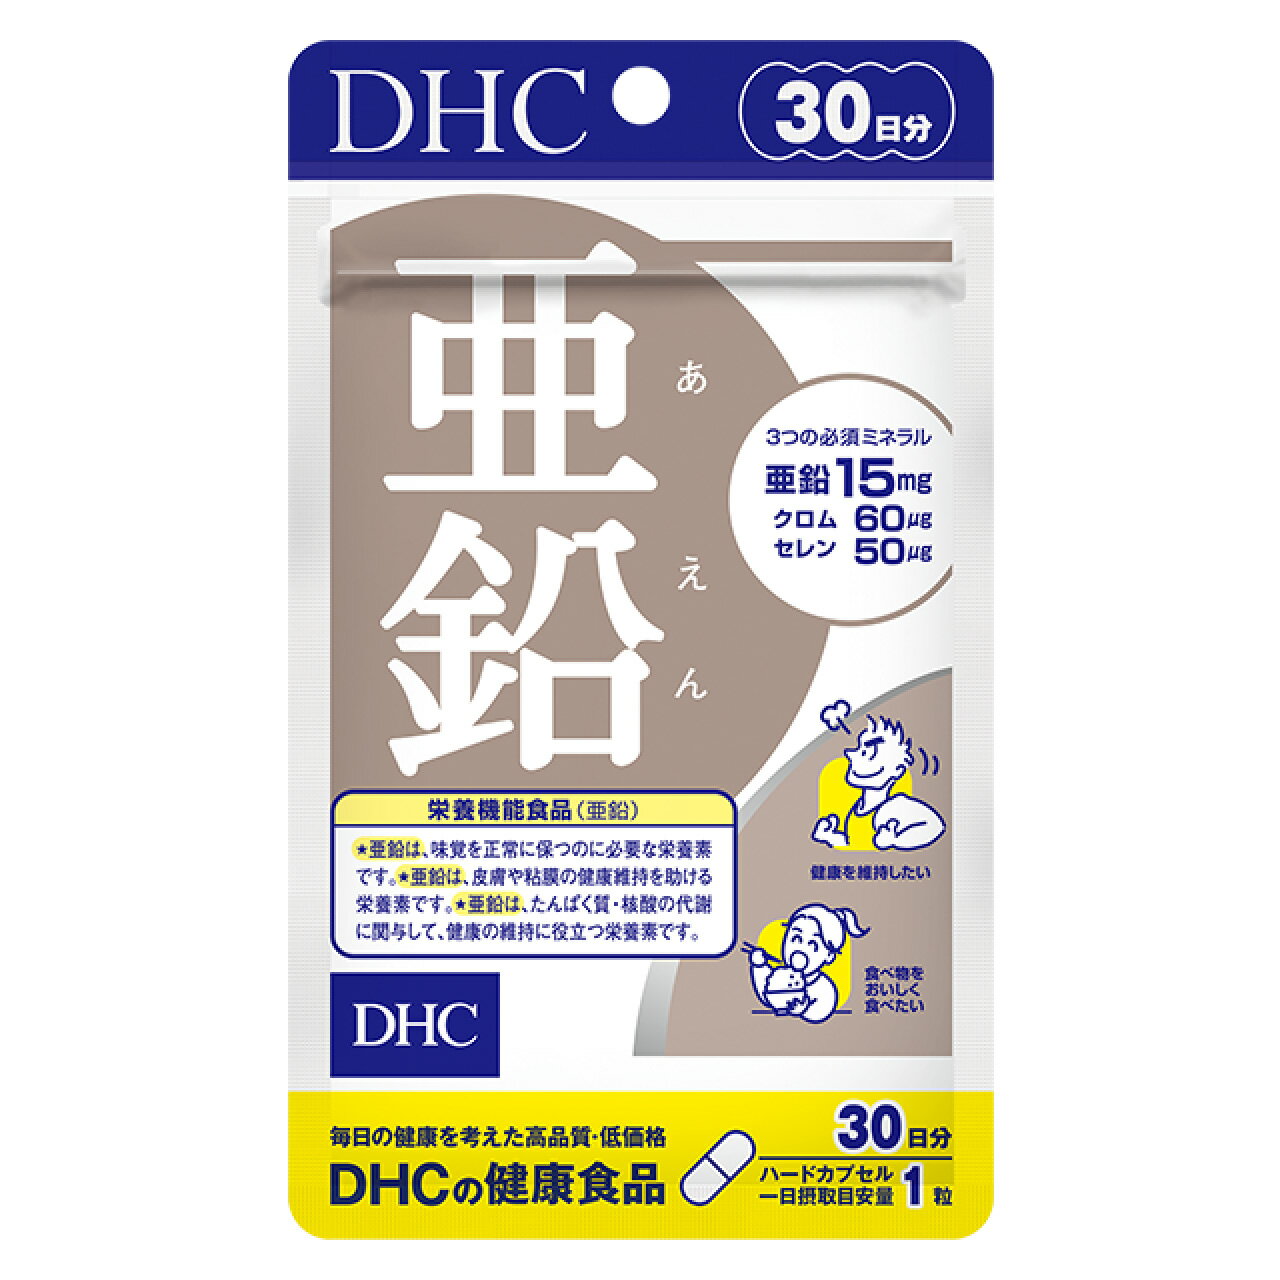 DHC 亜鉛のパワーで活力をサポート 